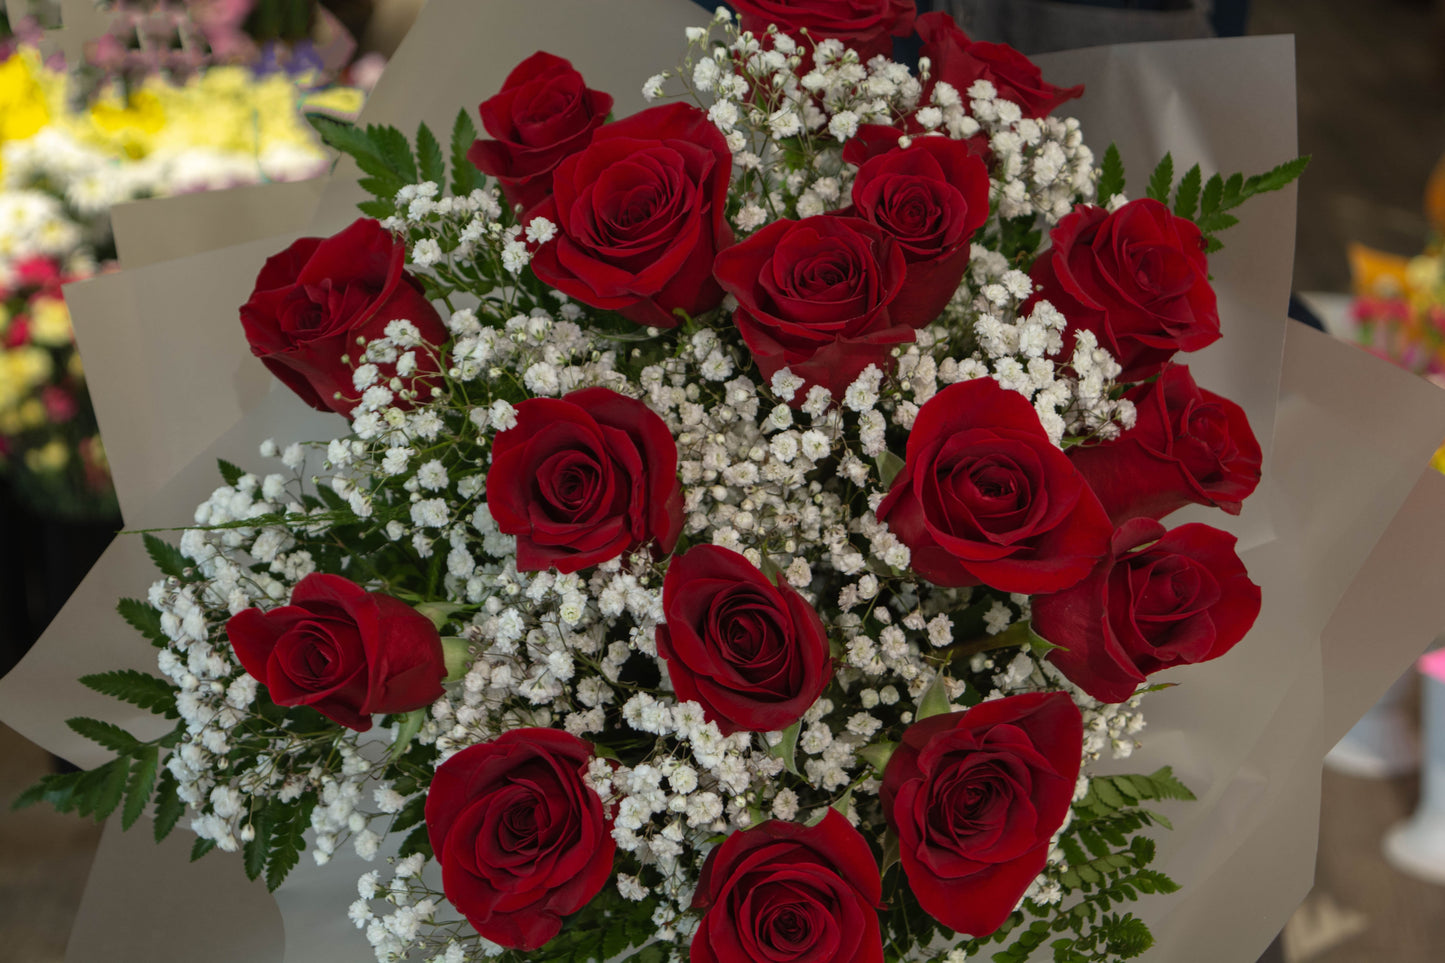 Cadou floral cu 15 trandafiri proaspeți și livrare GRATUITĂ Buchet elegant 15 trandafiri cu livrare GRATUITĂ în Resita Flori proaspete și parfumate cu livrare GRATUITĂ în Resita Trandafiri roșii și albi în buchet de 15 cu livrare GRATUITĂ Buchet simplu și frumos cu 15 trandafiri proaspeți și livrare GRATUITĂ